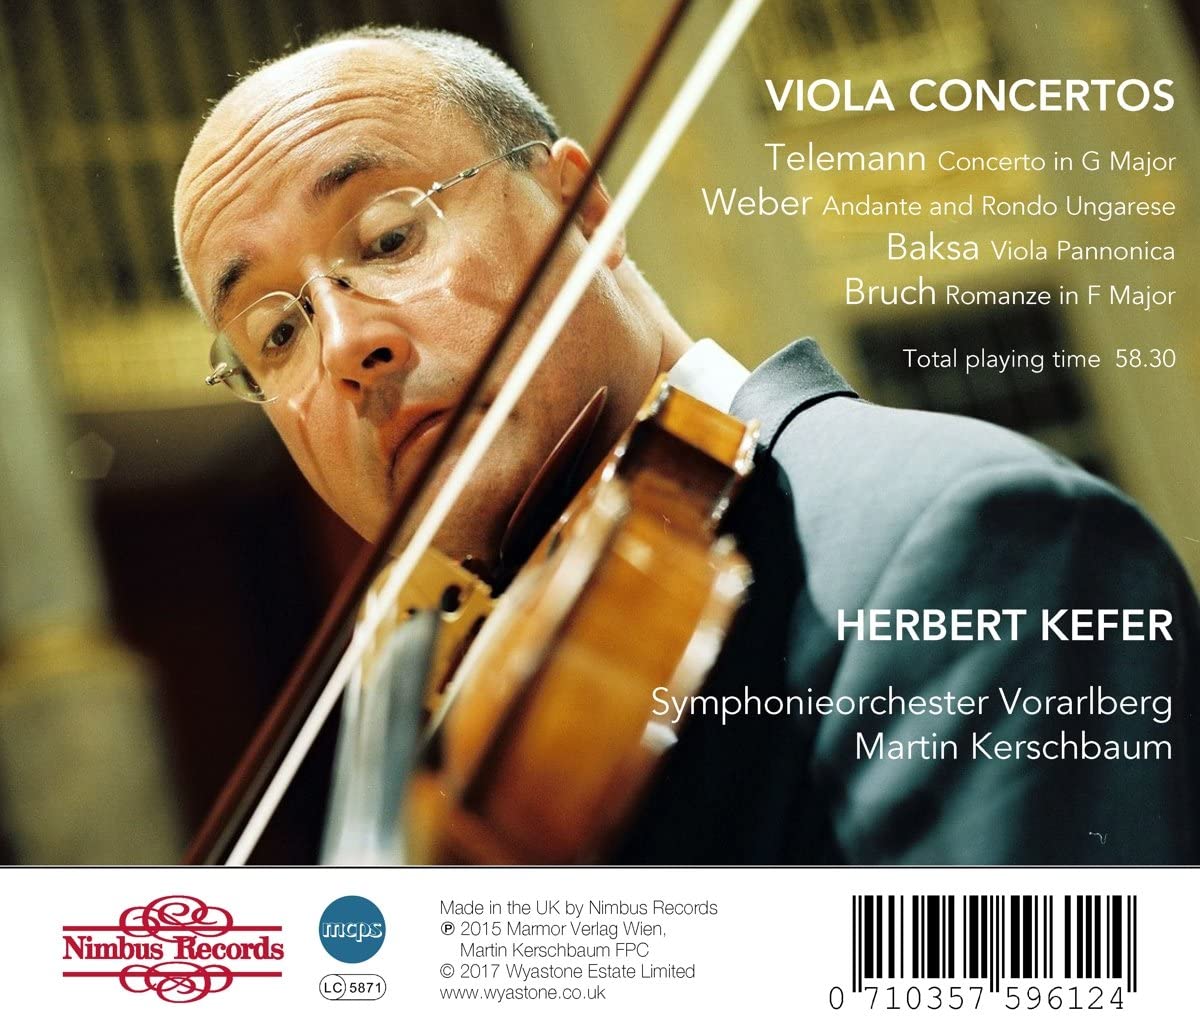 Telemann, Weber, Baksa, Bruch: Viola Concertos - slide-1